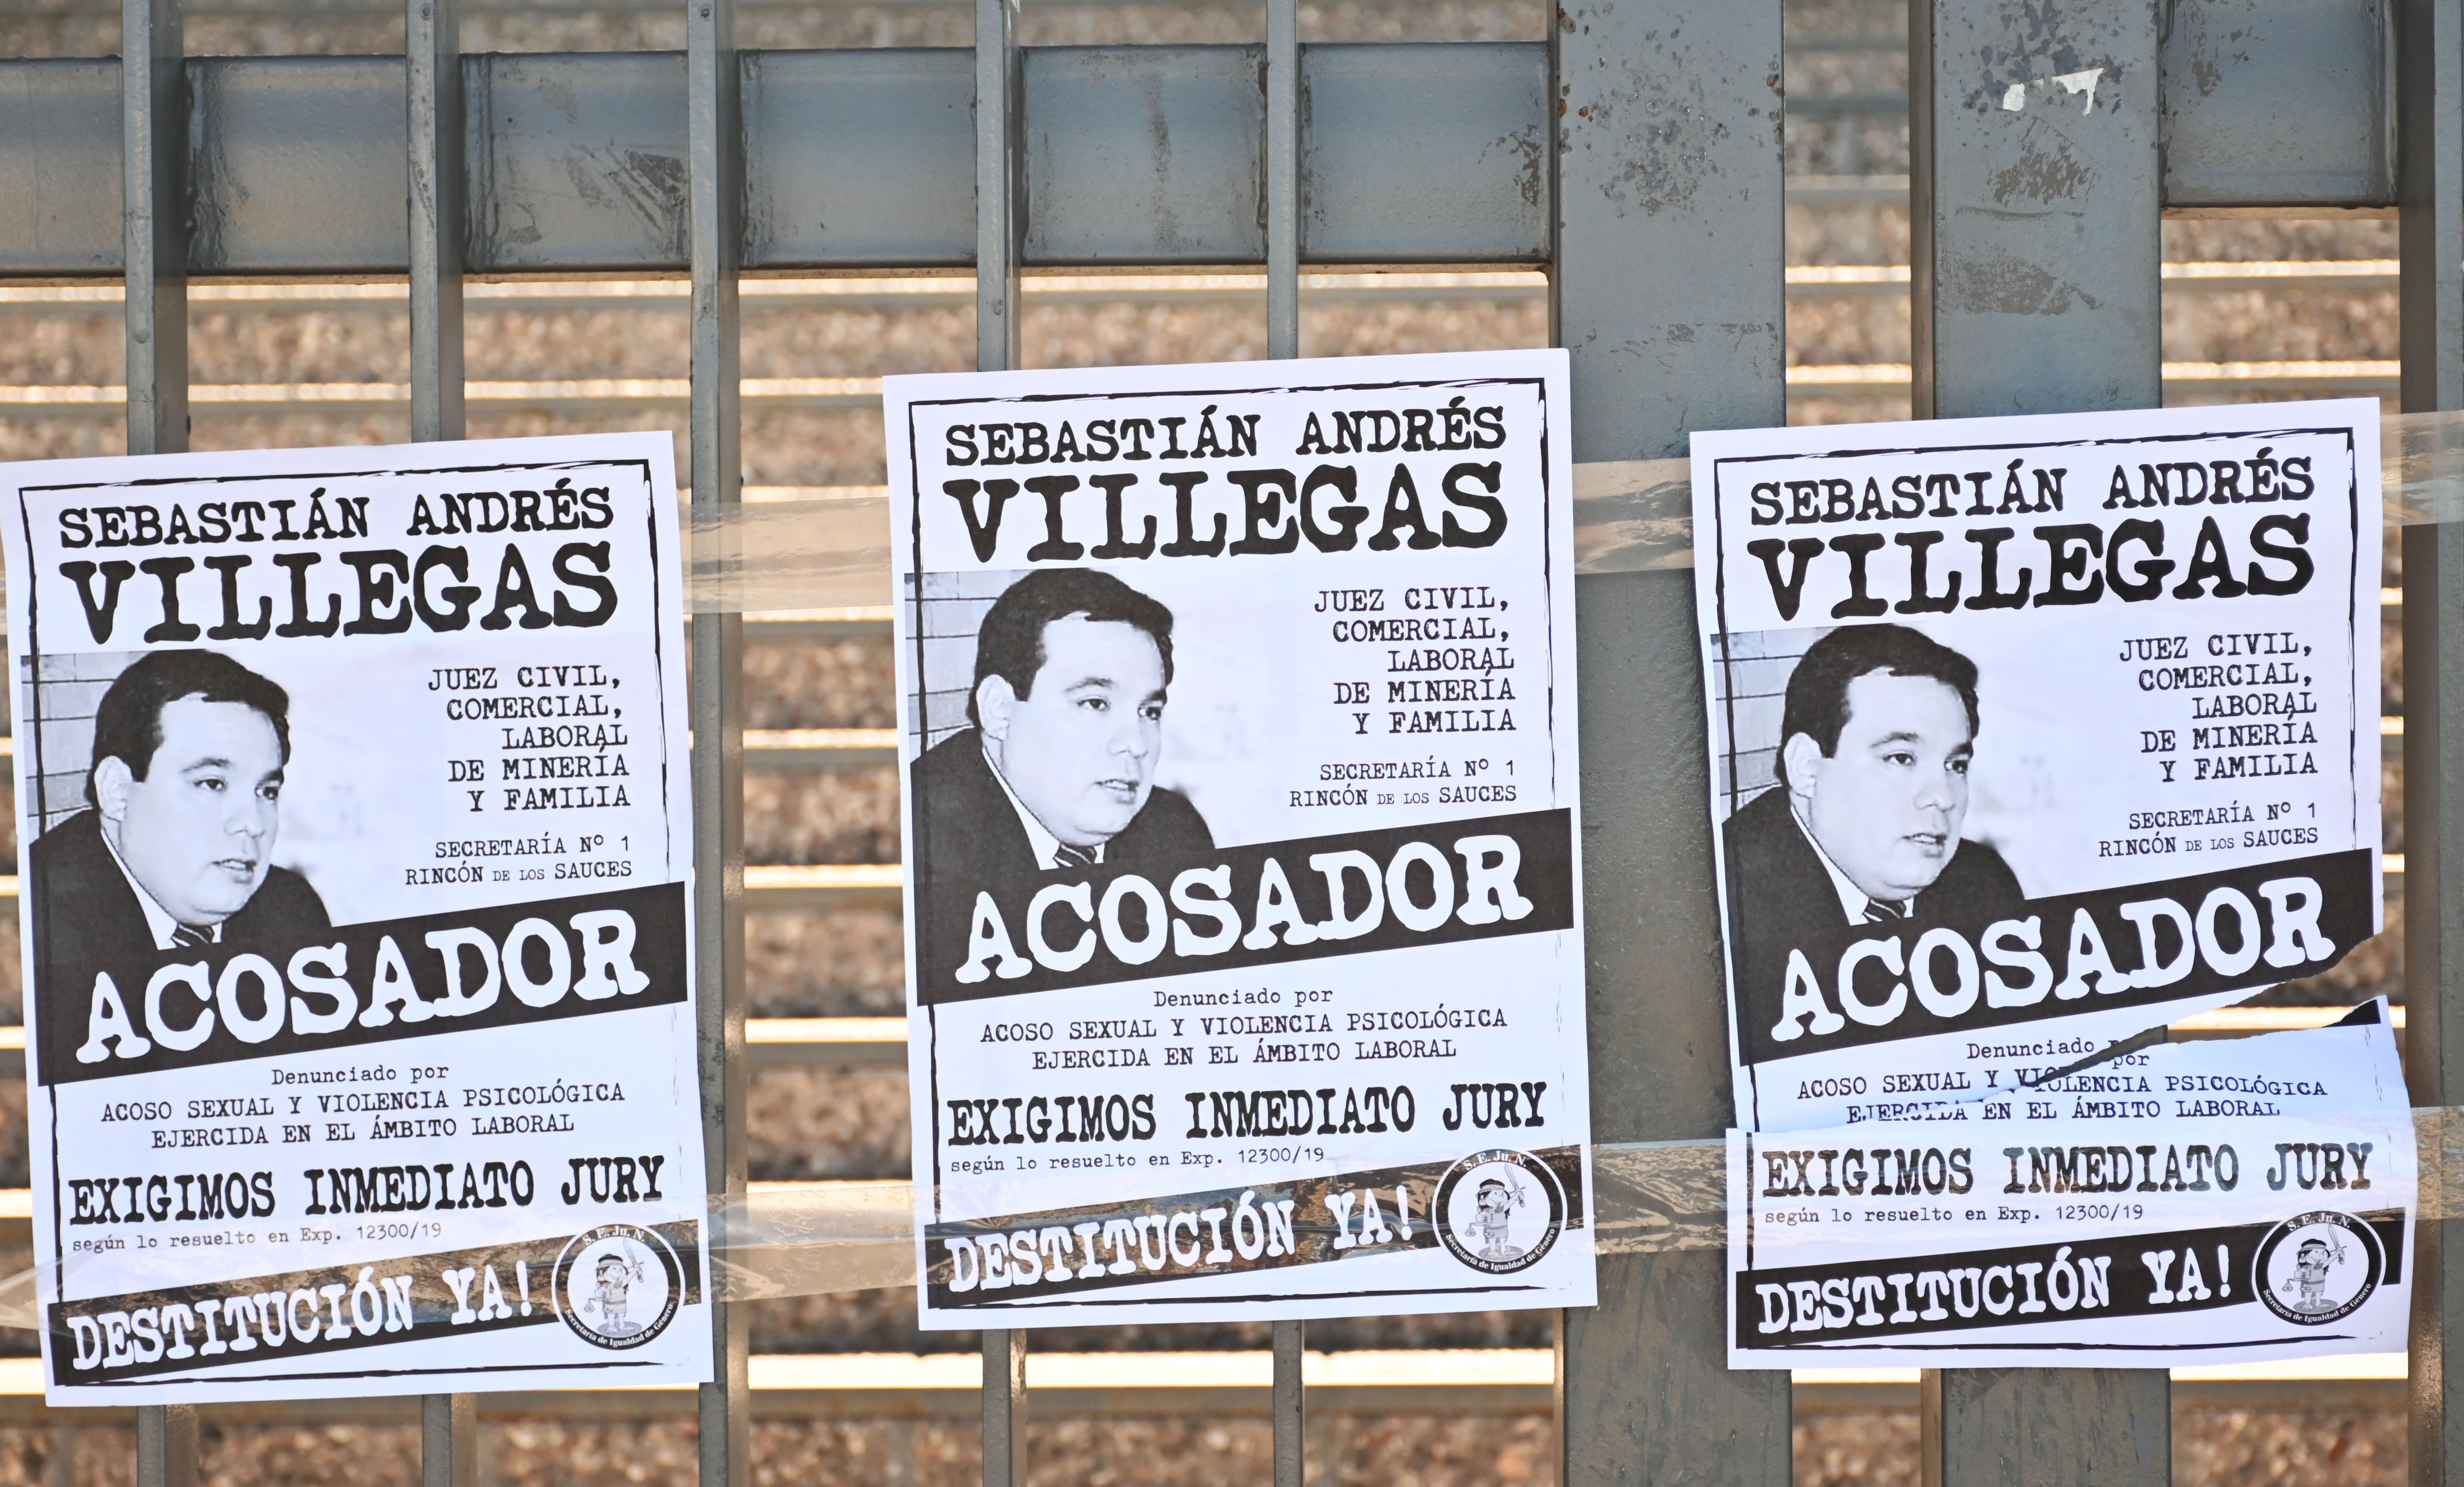 Desde Sejun aseguran que reciben una denuncia semanal por violencia a partir de la acusación contra el juez Villegas. (Foto archivo: Florencia Salto).